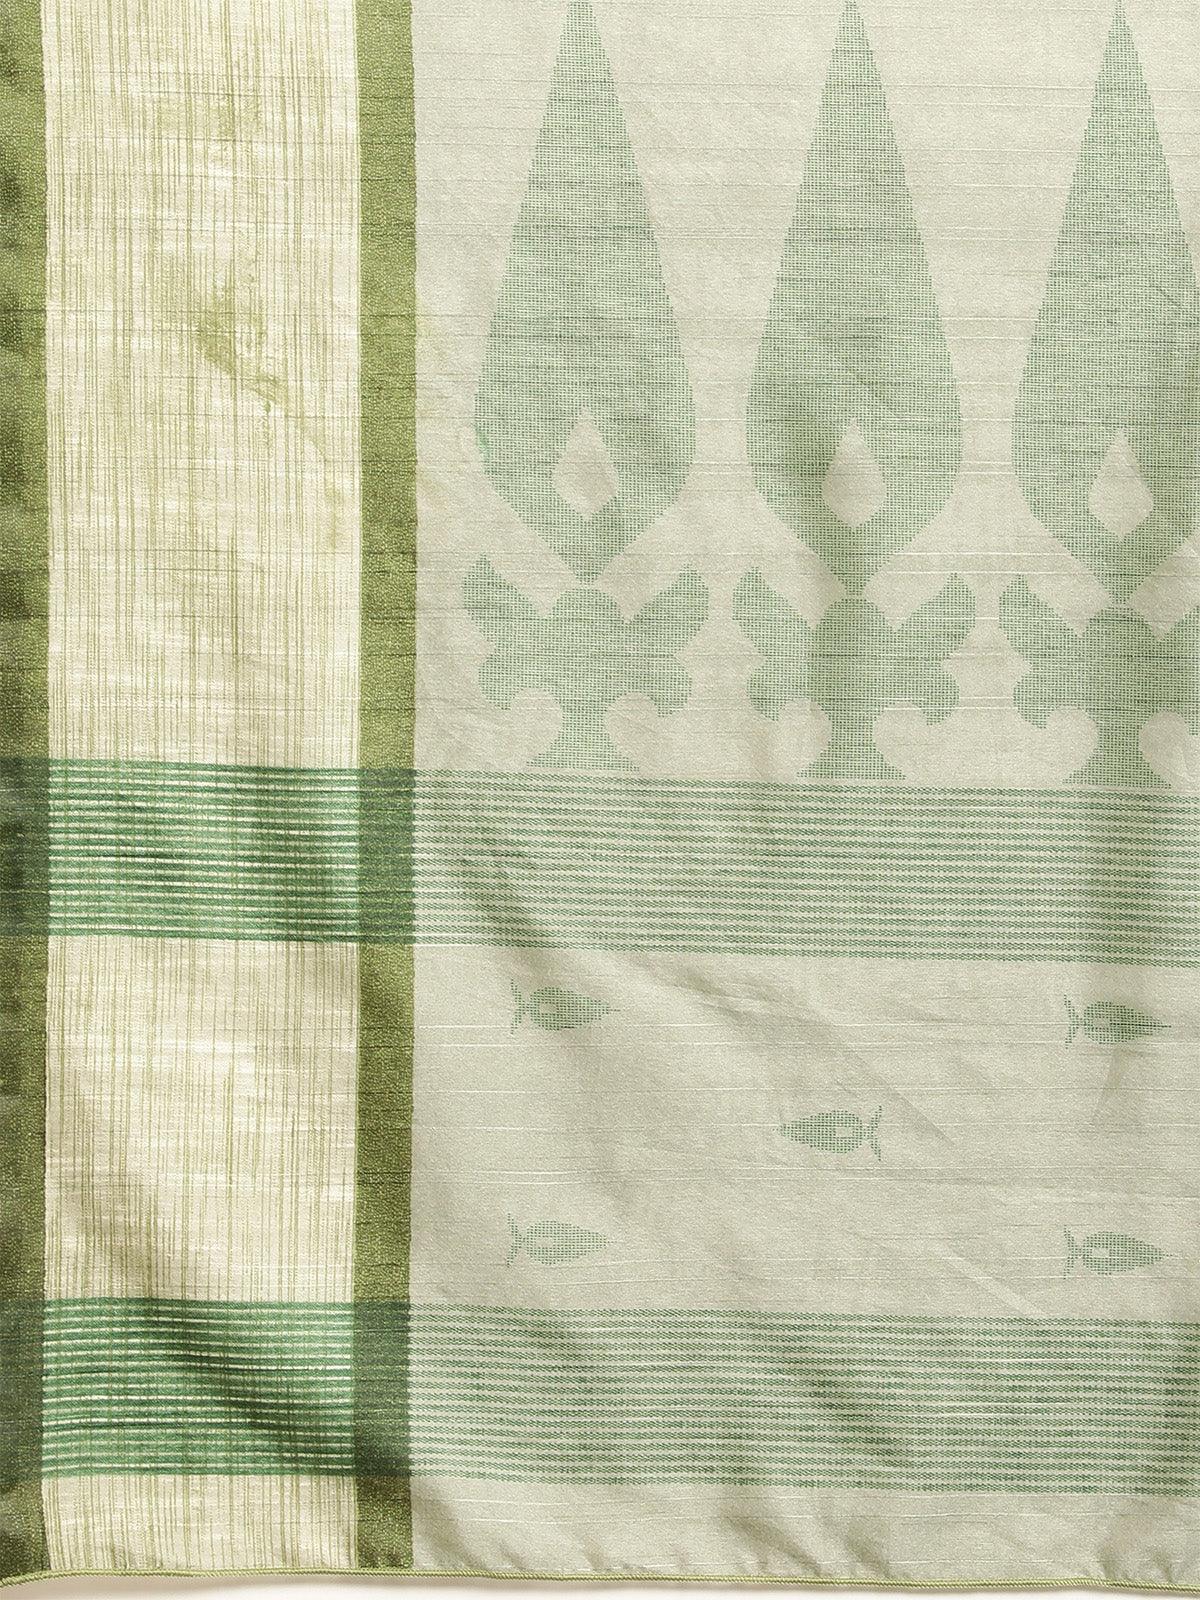 Women's Bhagalpuri Silk Green Printed Saree With Blouse Piece - Odette